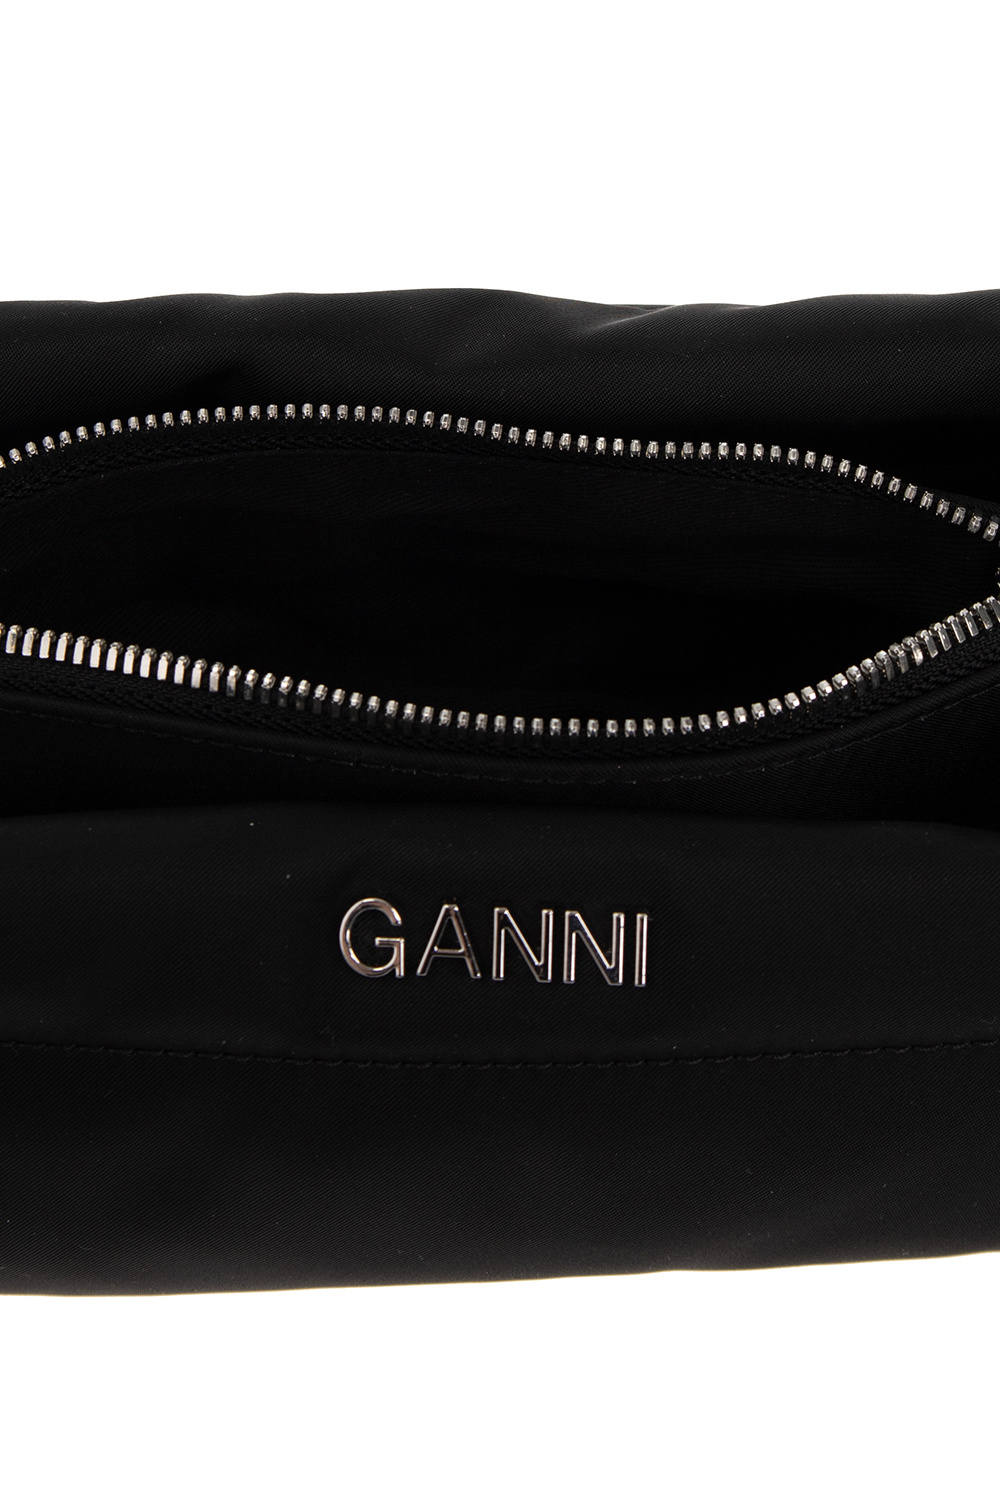 Ganni Shoulder Python bag with logo